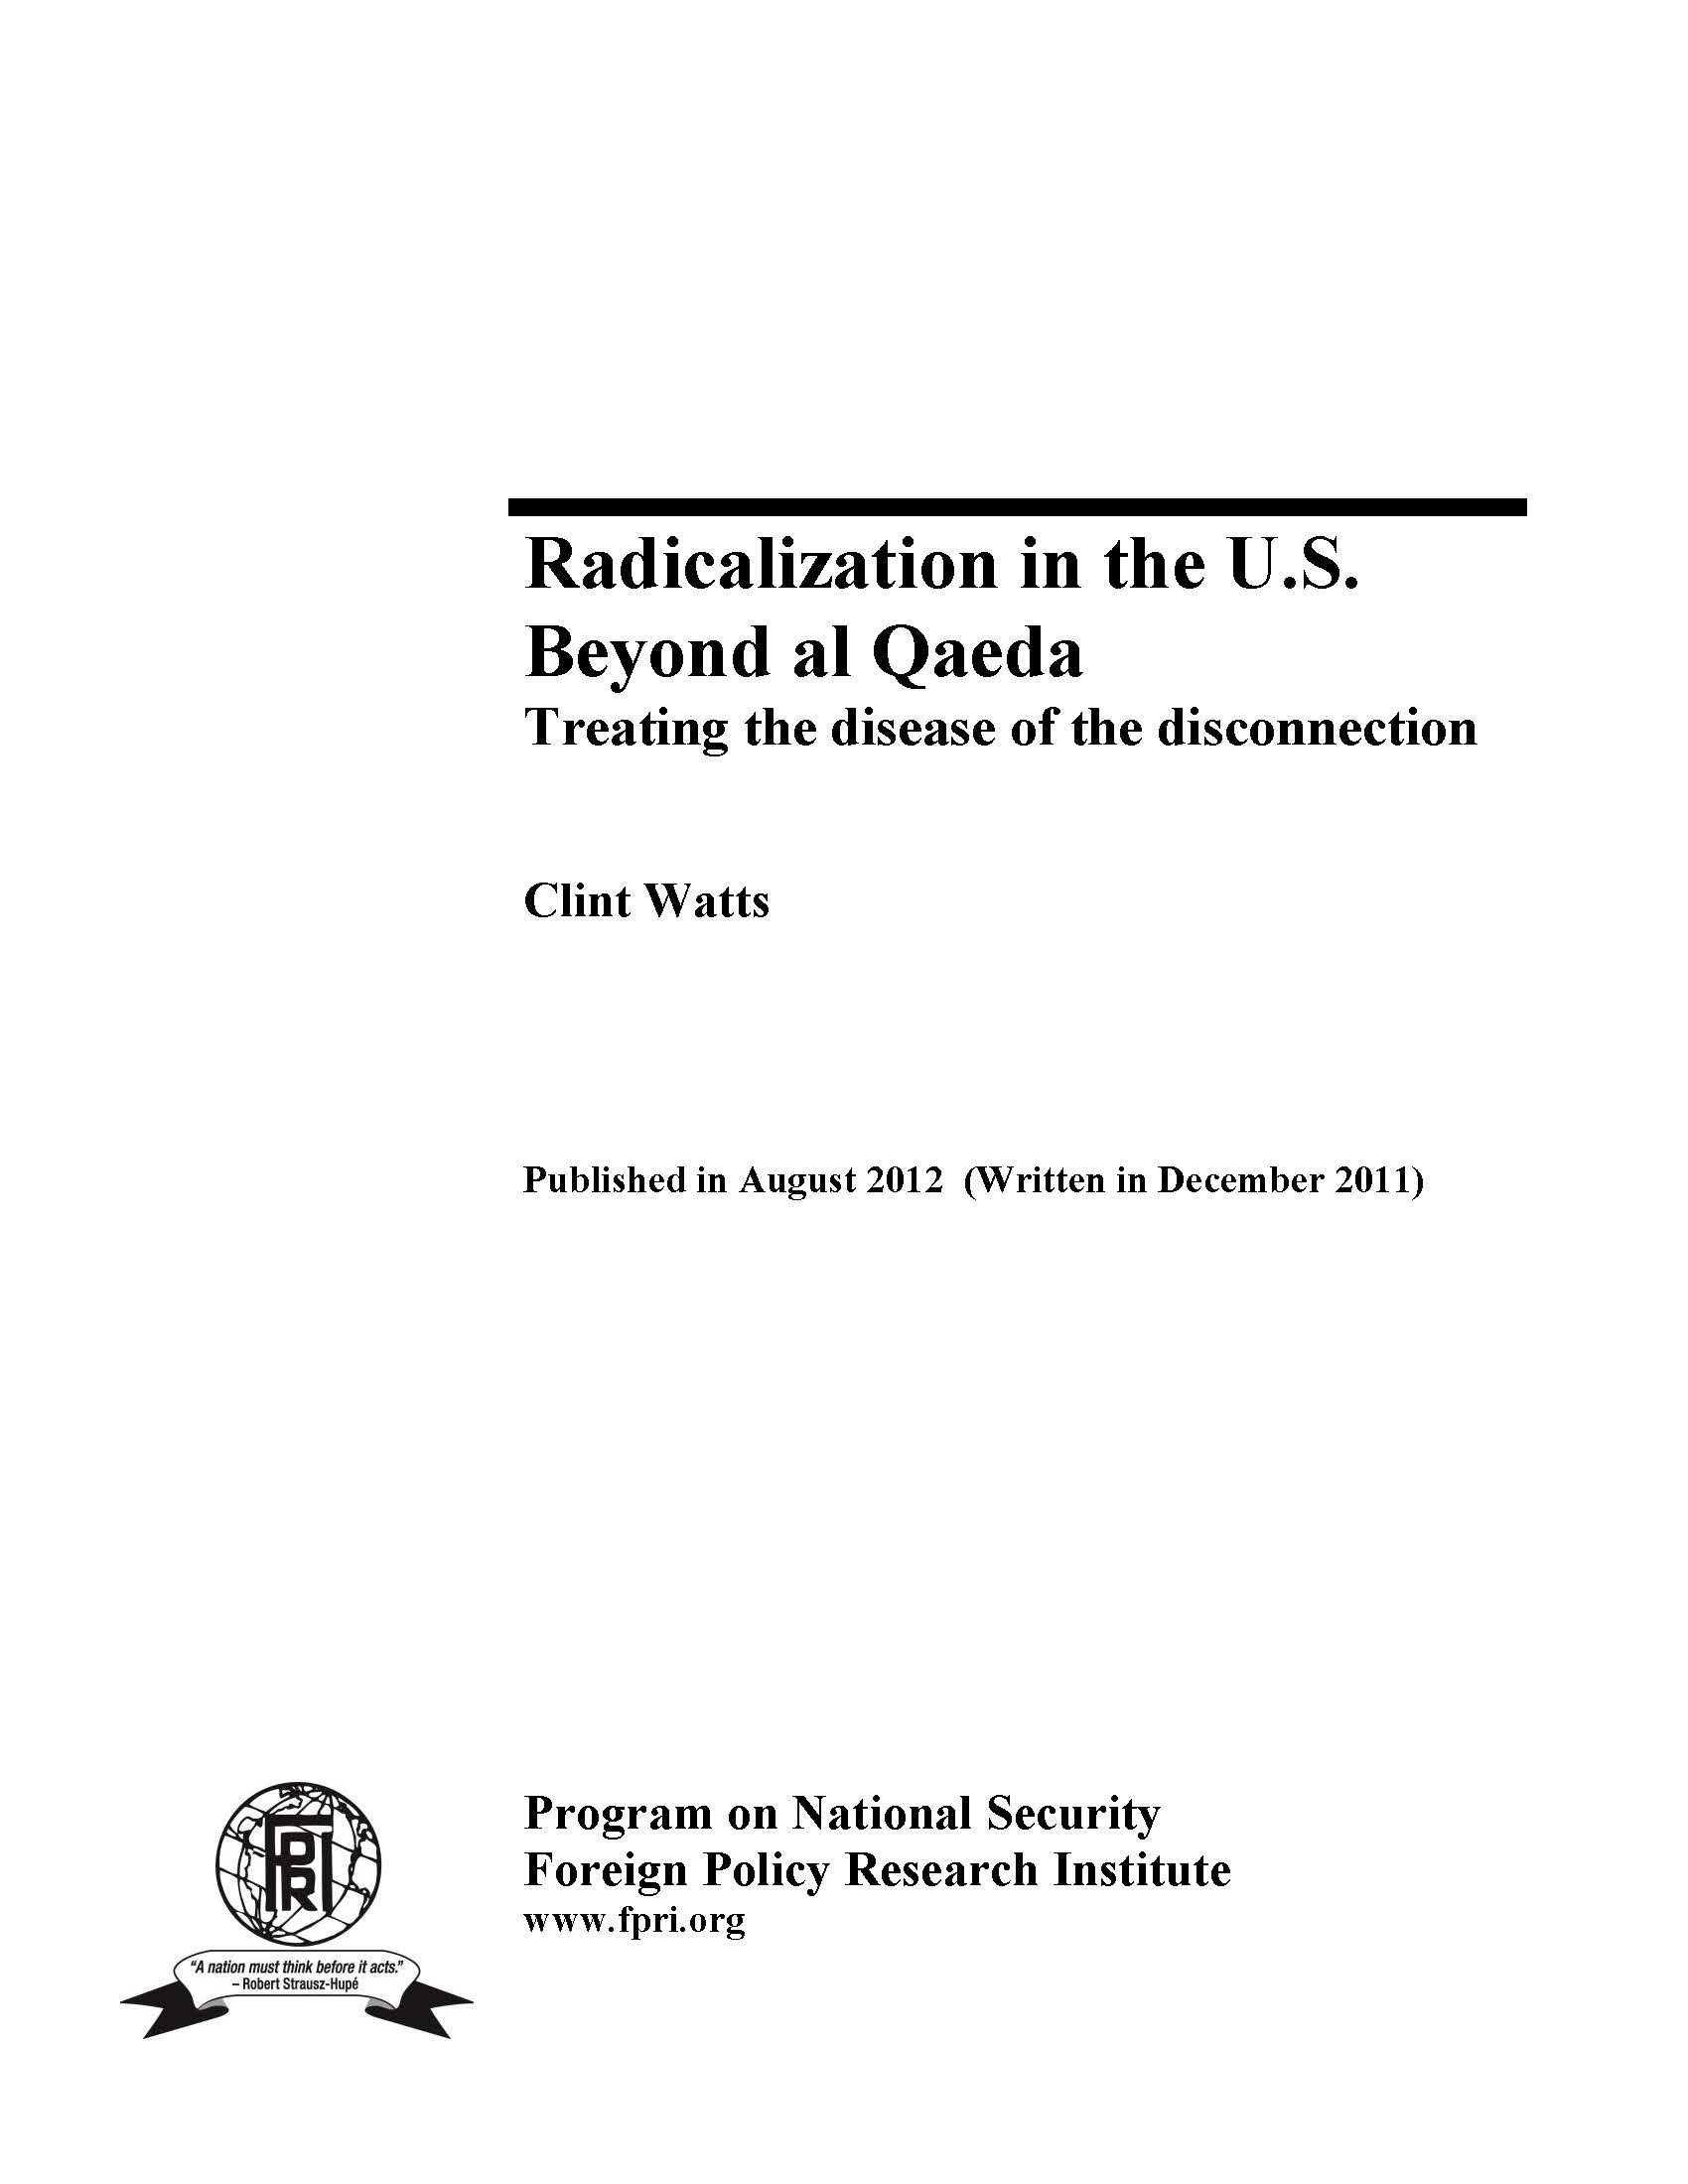 Radicalization in the U.S. Beyond al Qaeda